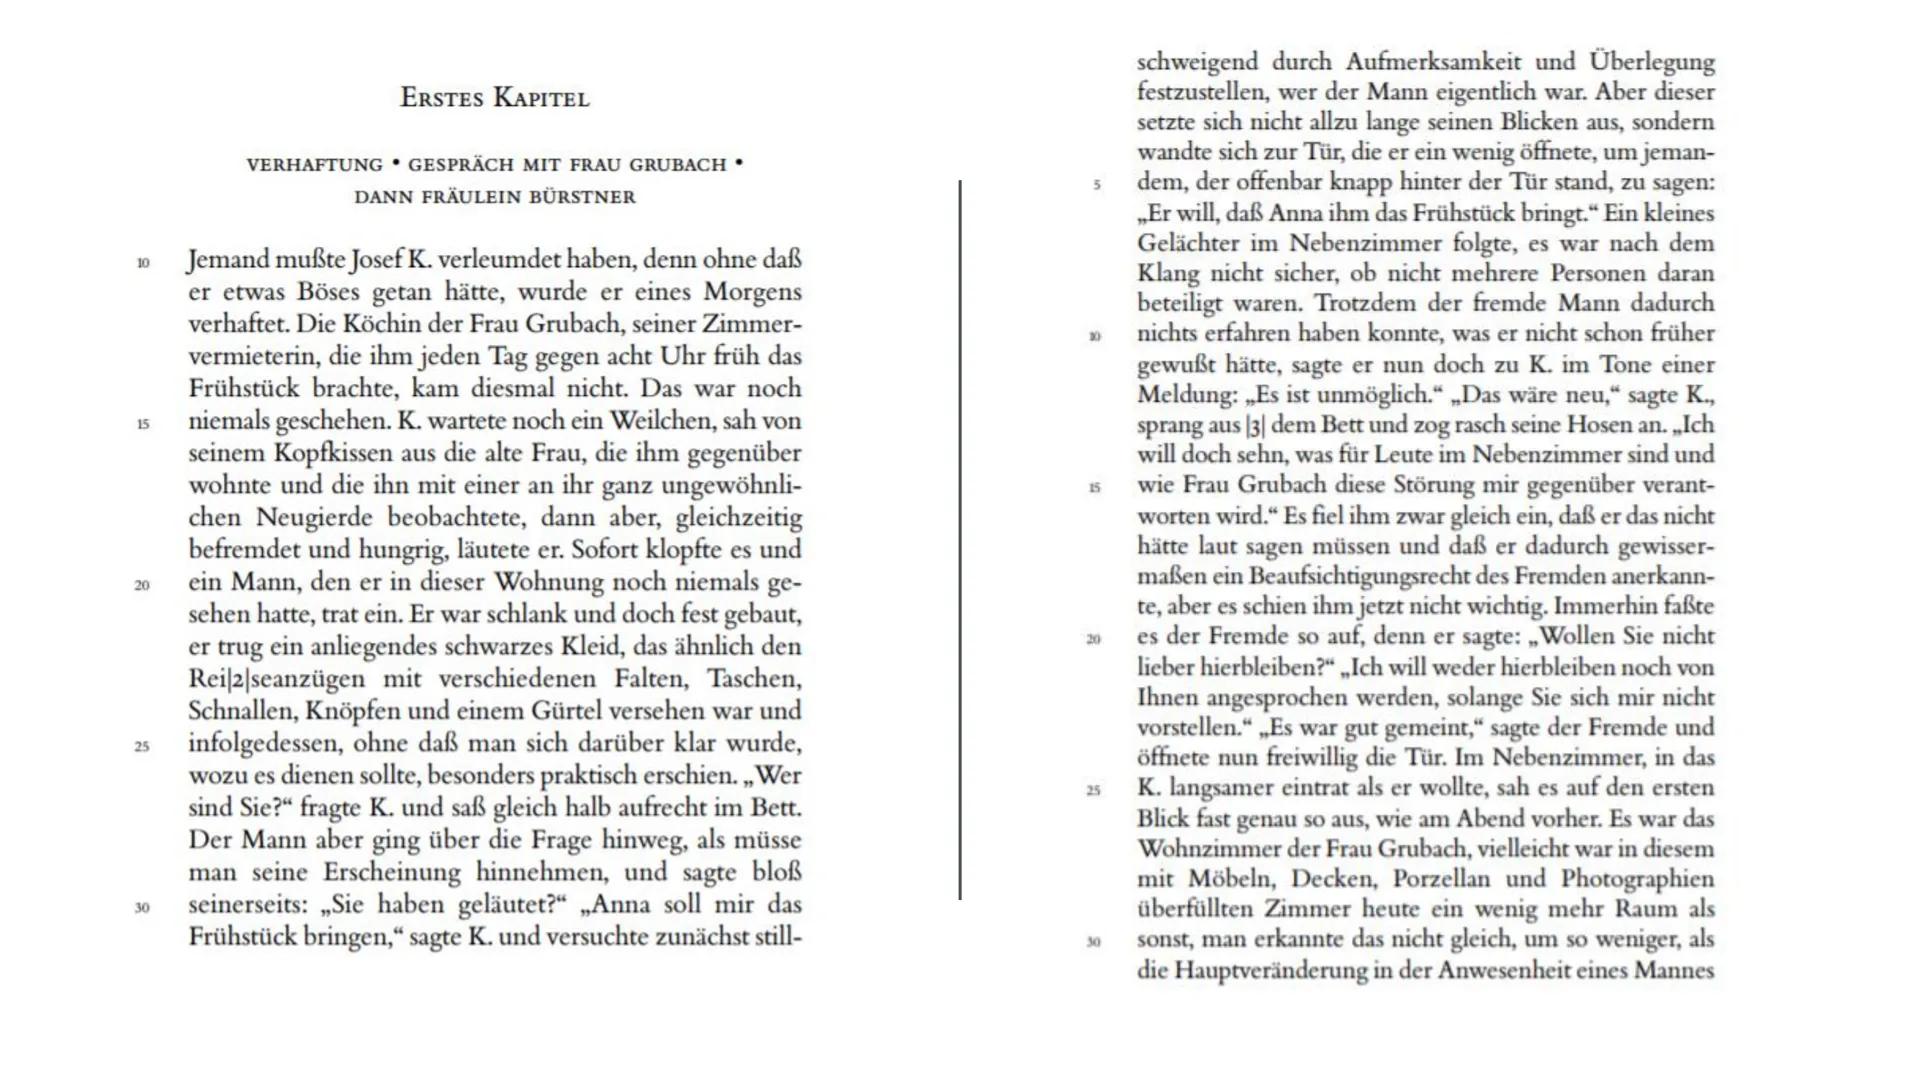 FRANZ KAFKA
LEBEN & WERK
Präsentation von Marie Schirmer GLIEDERUNG
●
●
Franz Kafka
• Biographie
●
,,Der Process"
Figurenkonstellation & Cha